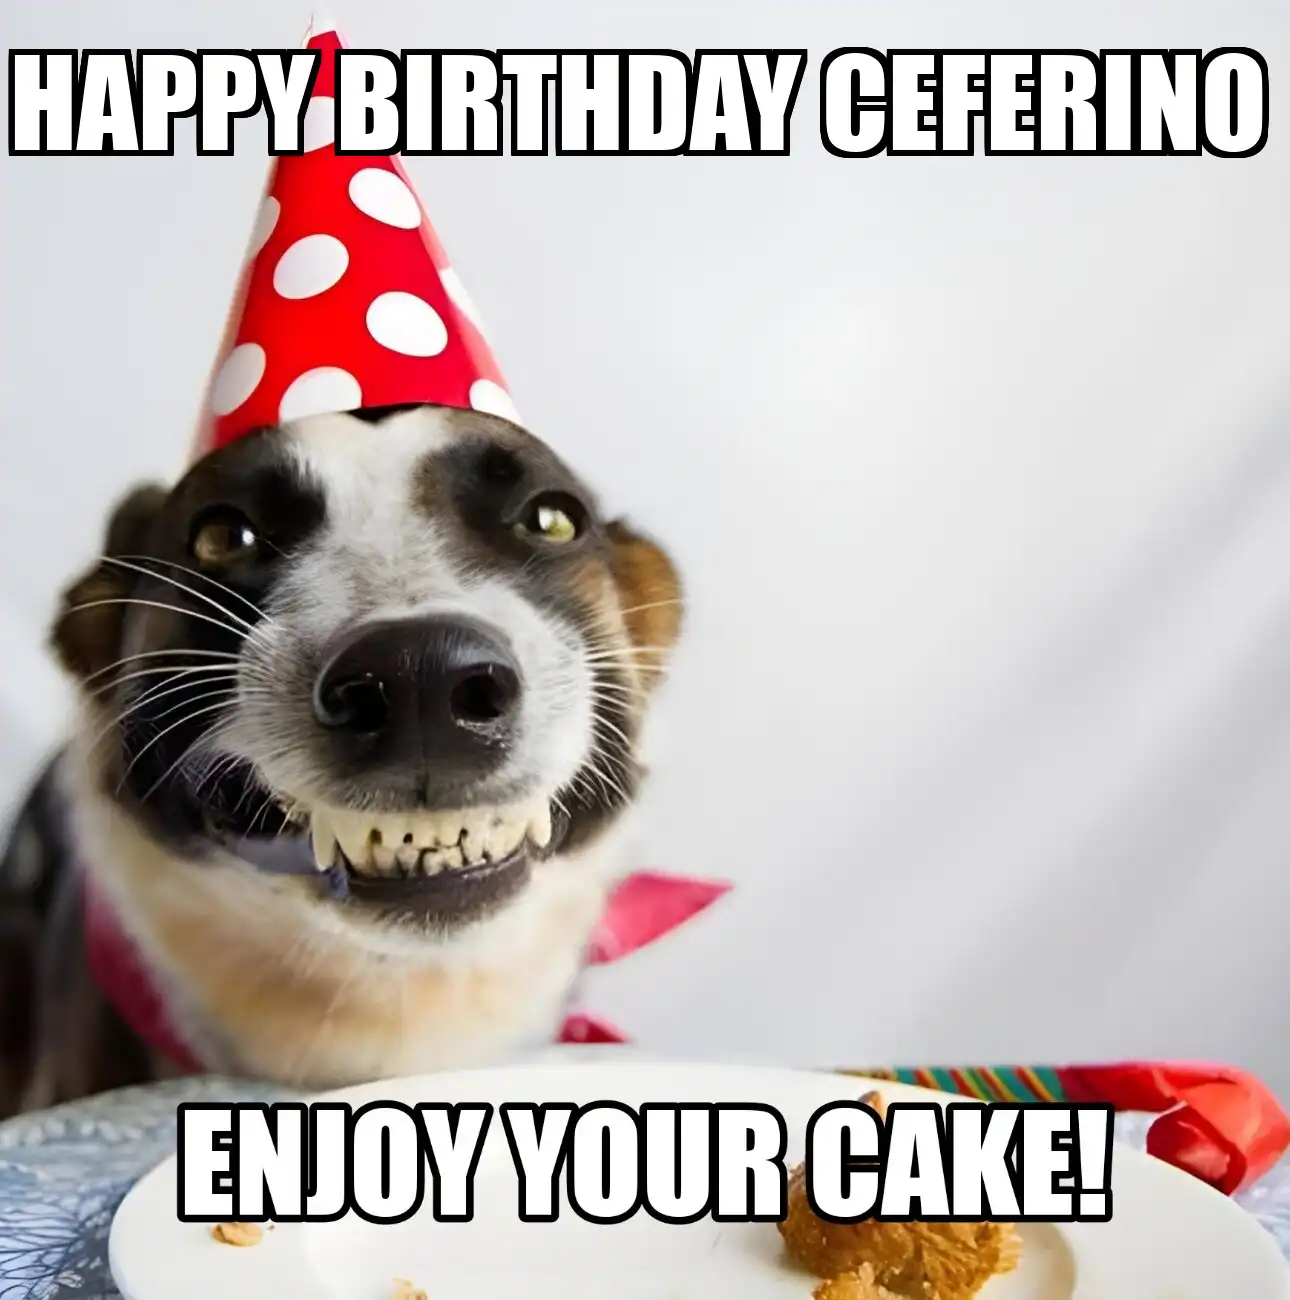 Happy Birthday Ceferino Enjoy Your Cake Dog Meme